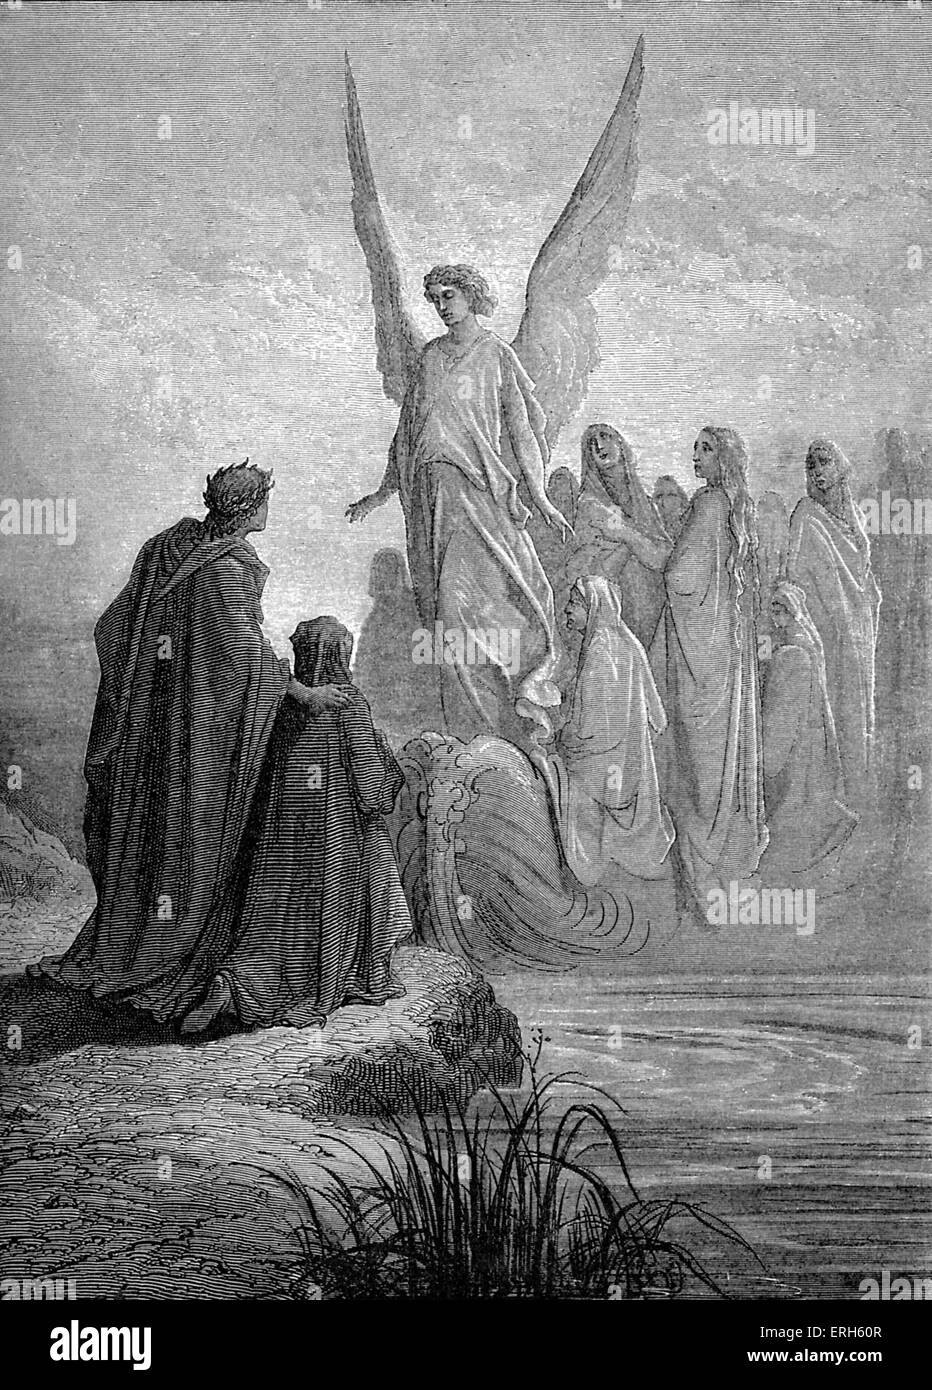 File:Gustove Dore, The Divine Comedy, Purgatory, plate 93, The Burden of  Pride.jpg - Wikimedia Commons